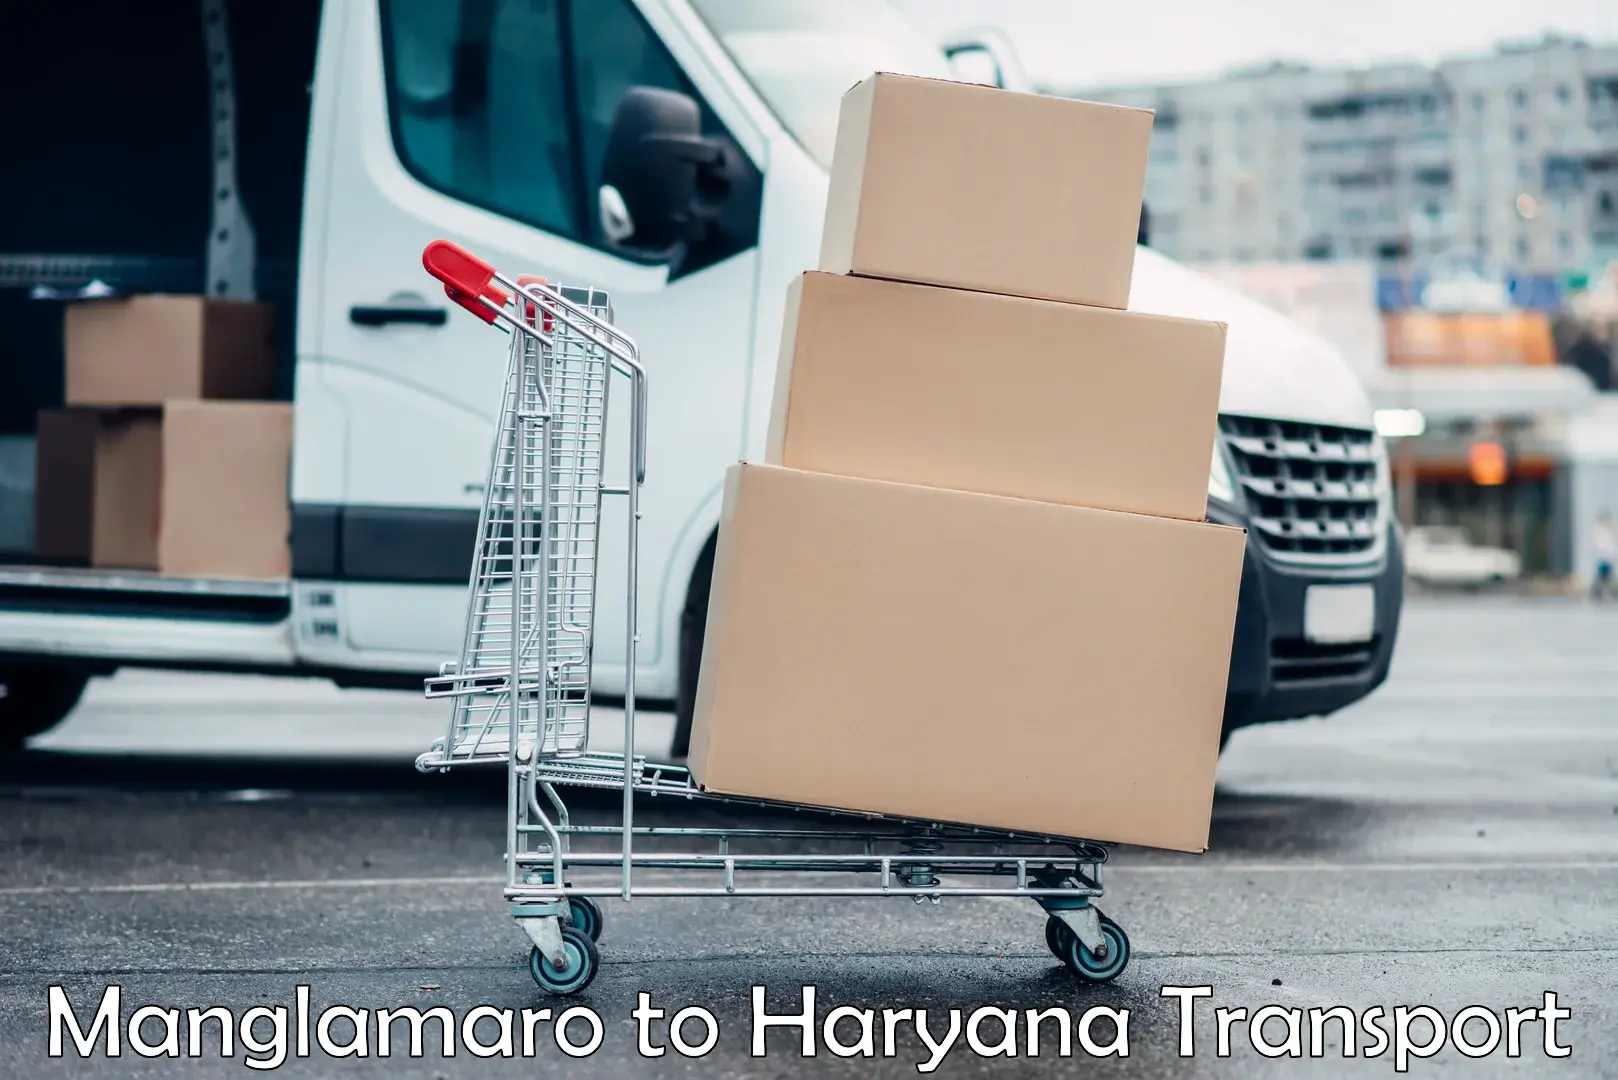 Transport services Manglamaro to Haryana